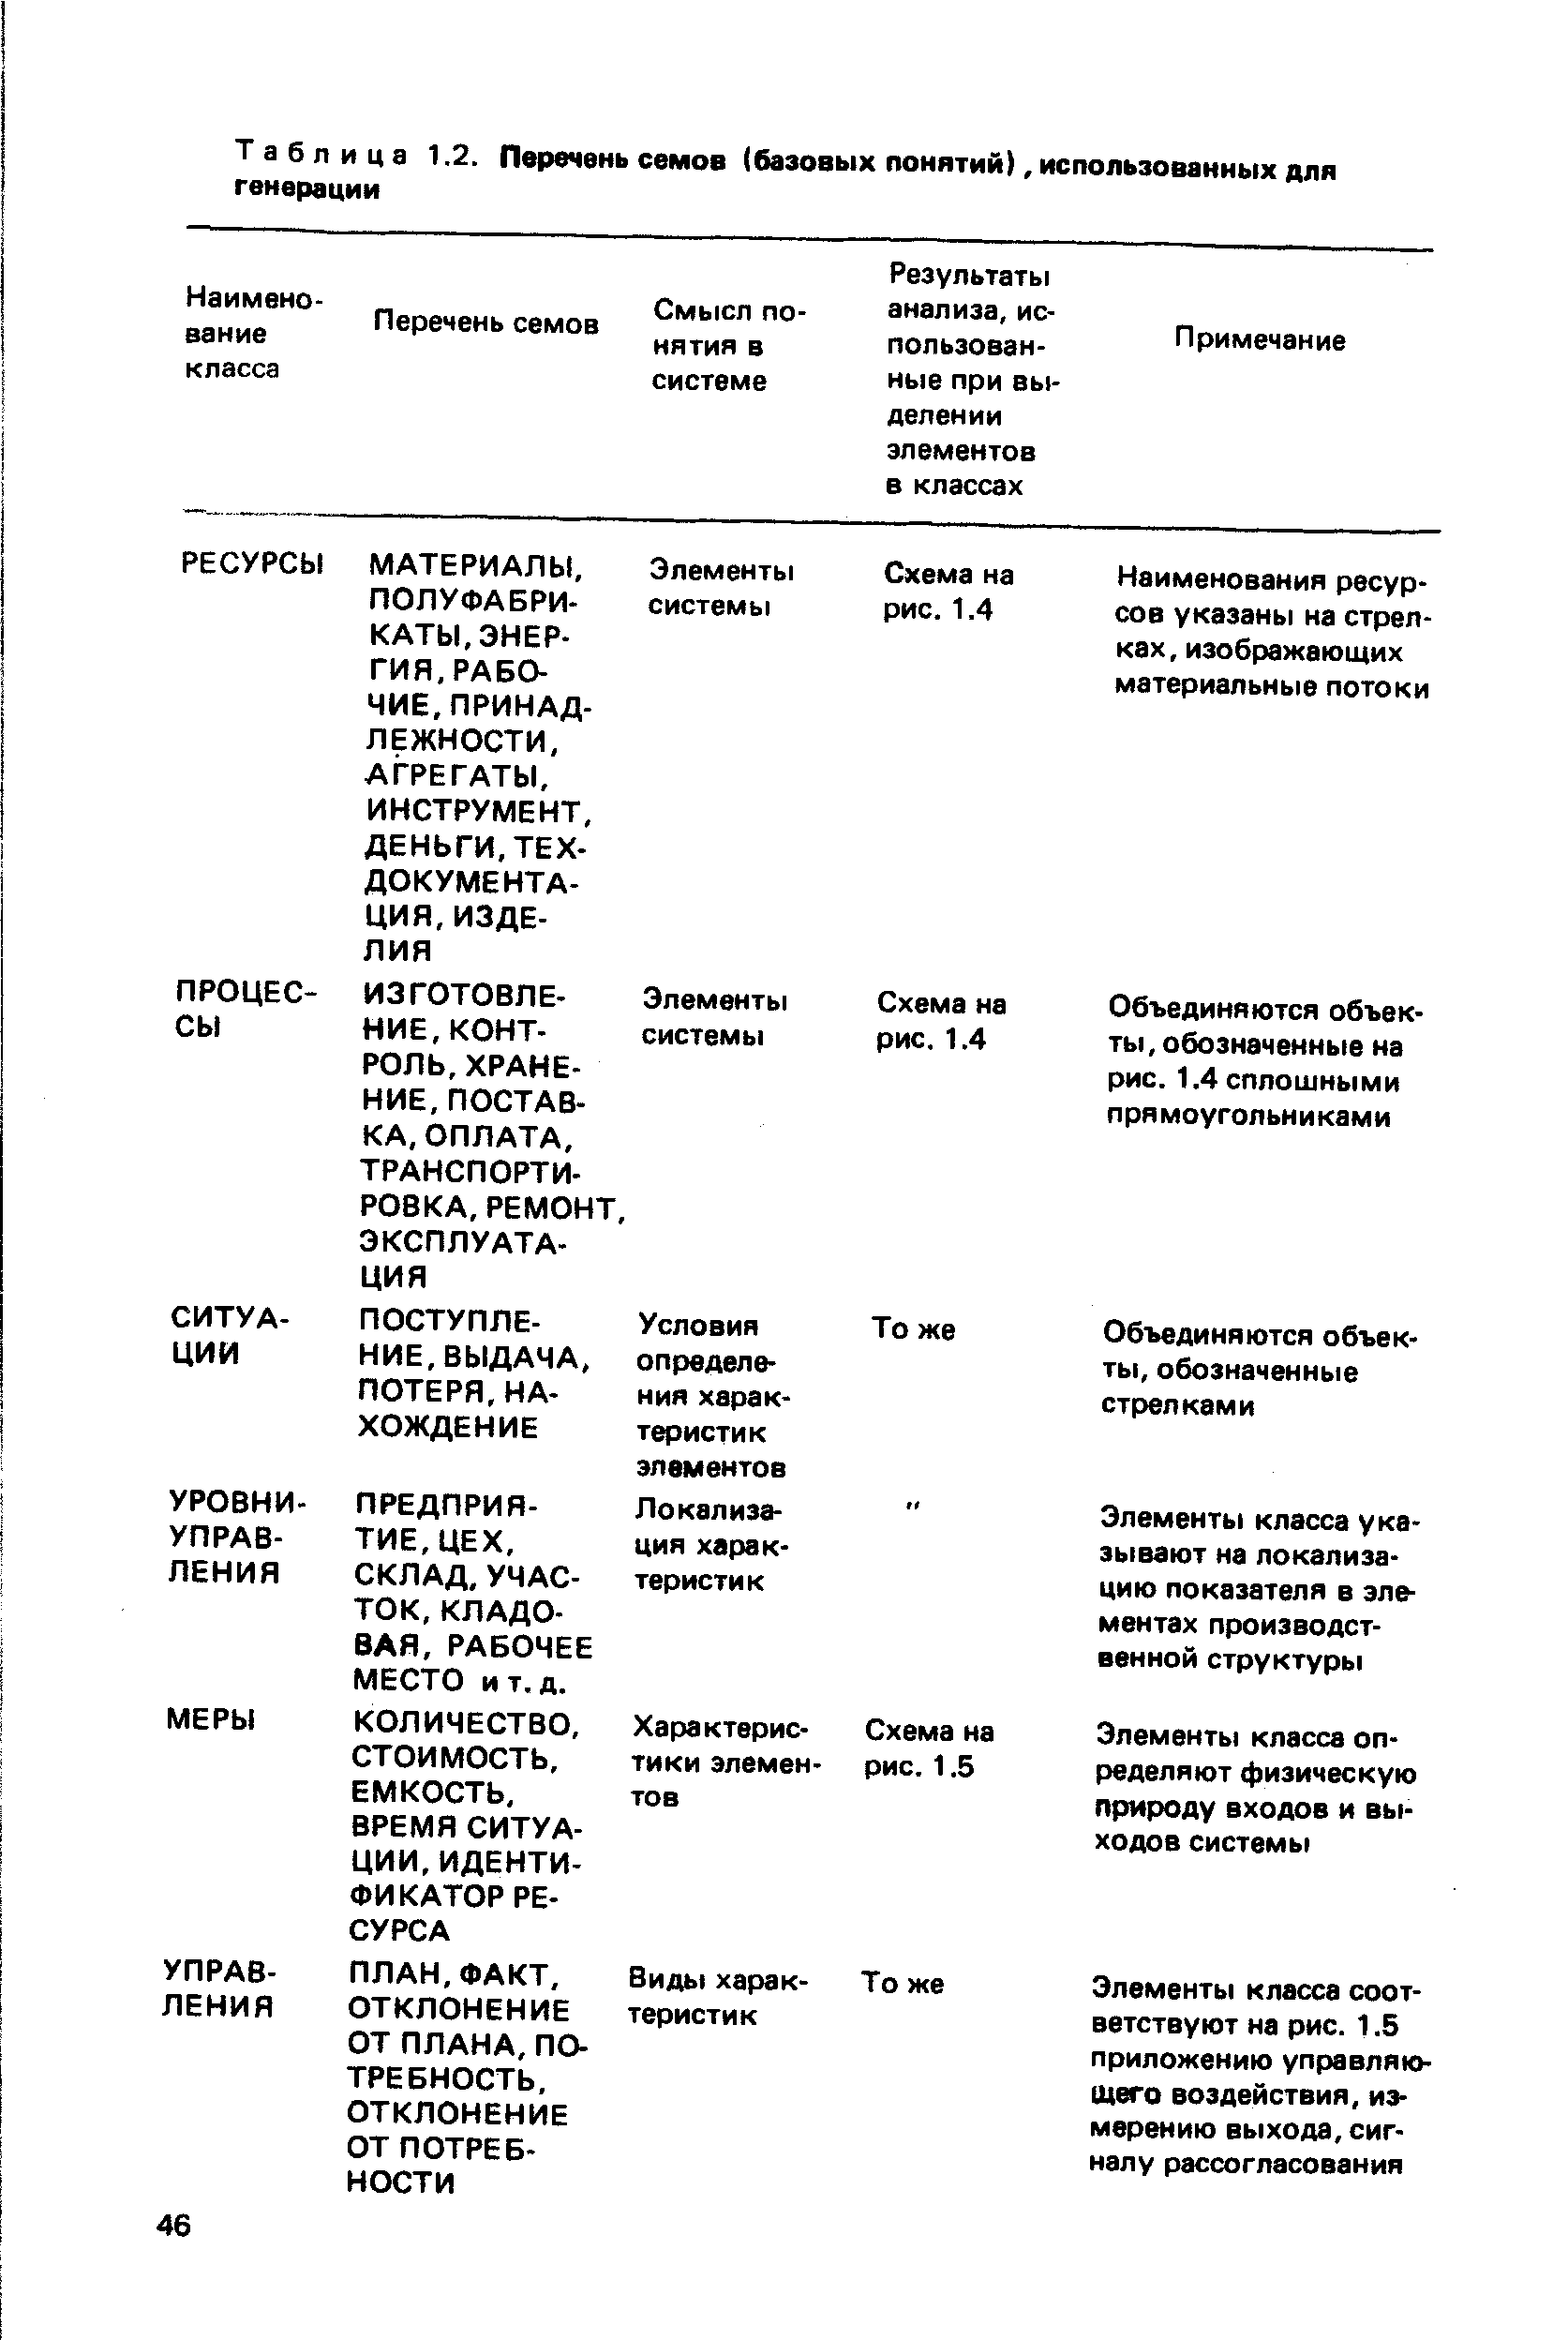 Таблица 1.2. Перечень семов (базовых понятий), использованных для генерации
